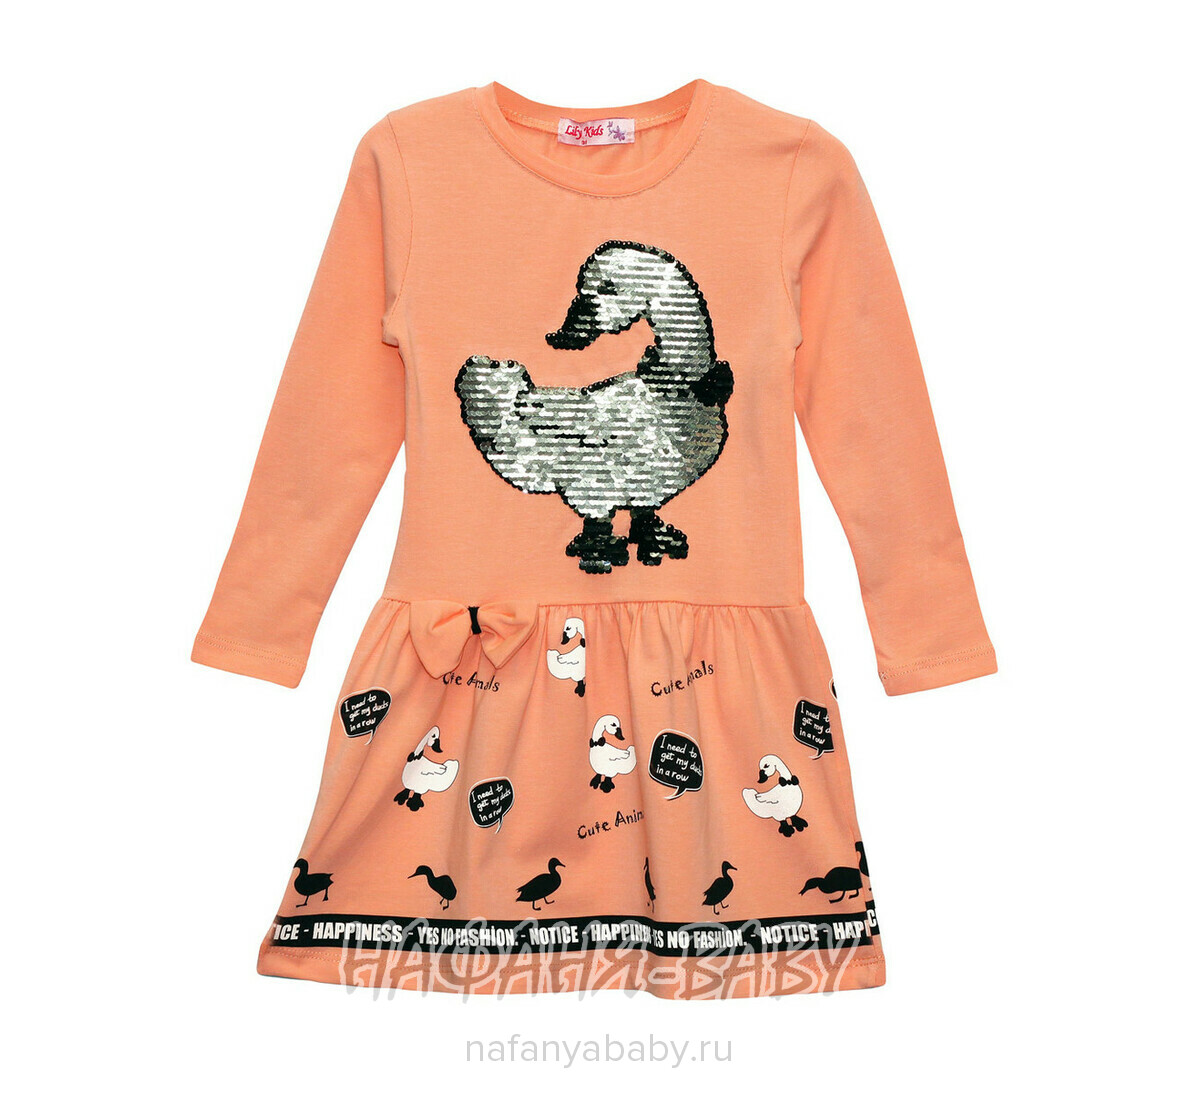 Детское платье с паетками-перевертышами LILY Kids арт: 5702, 1-4 года, оптом Турция